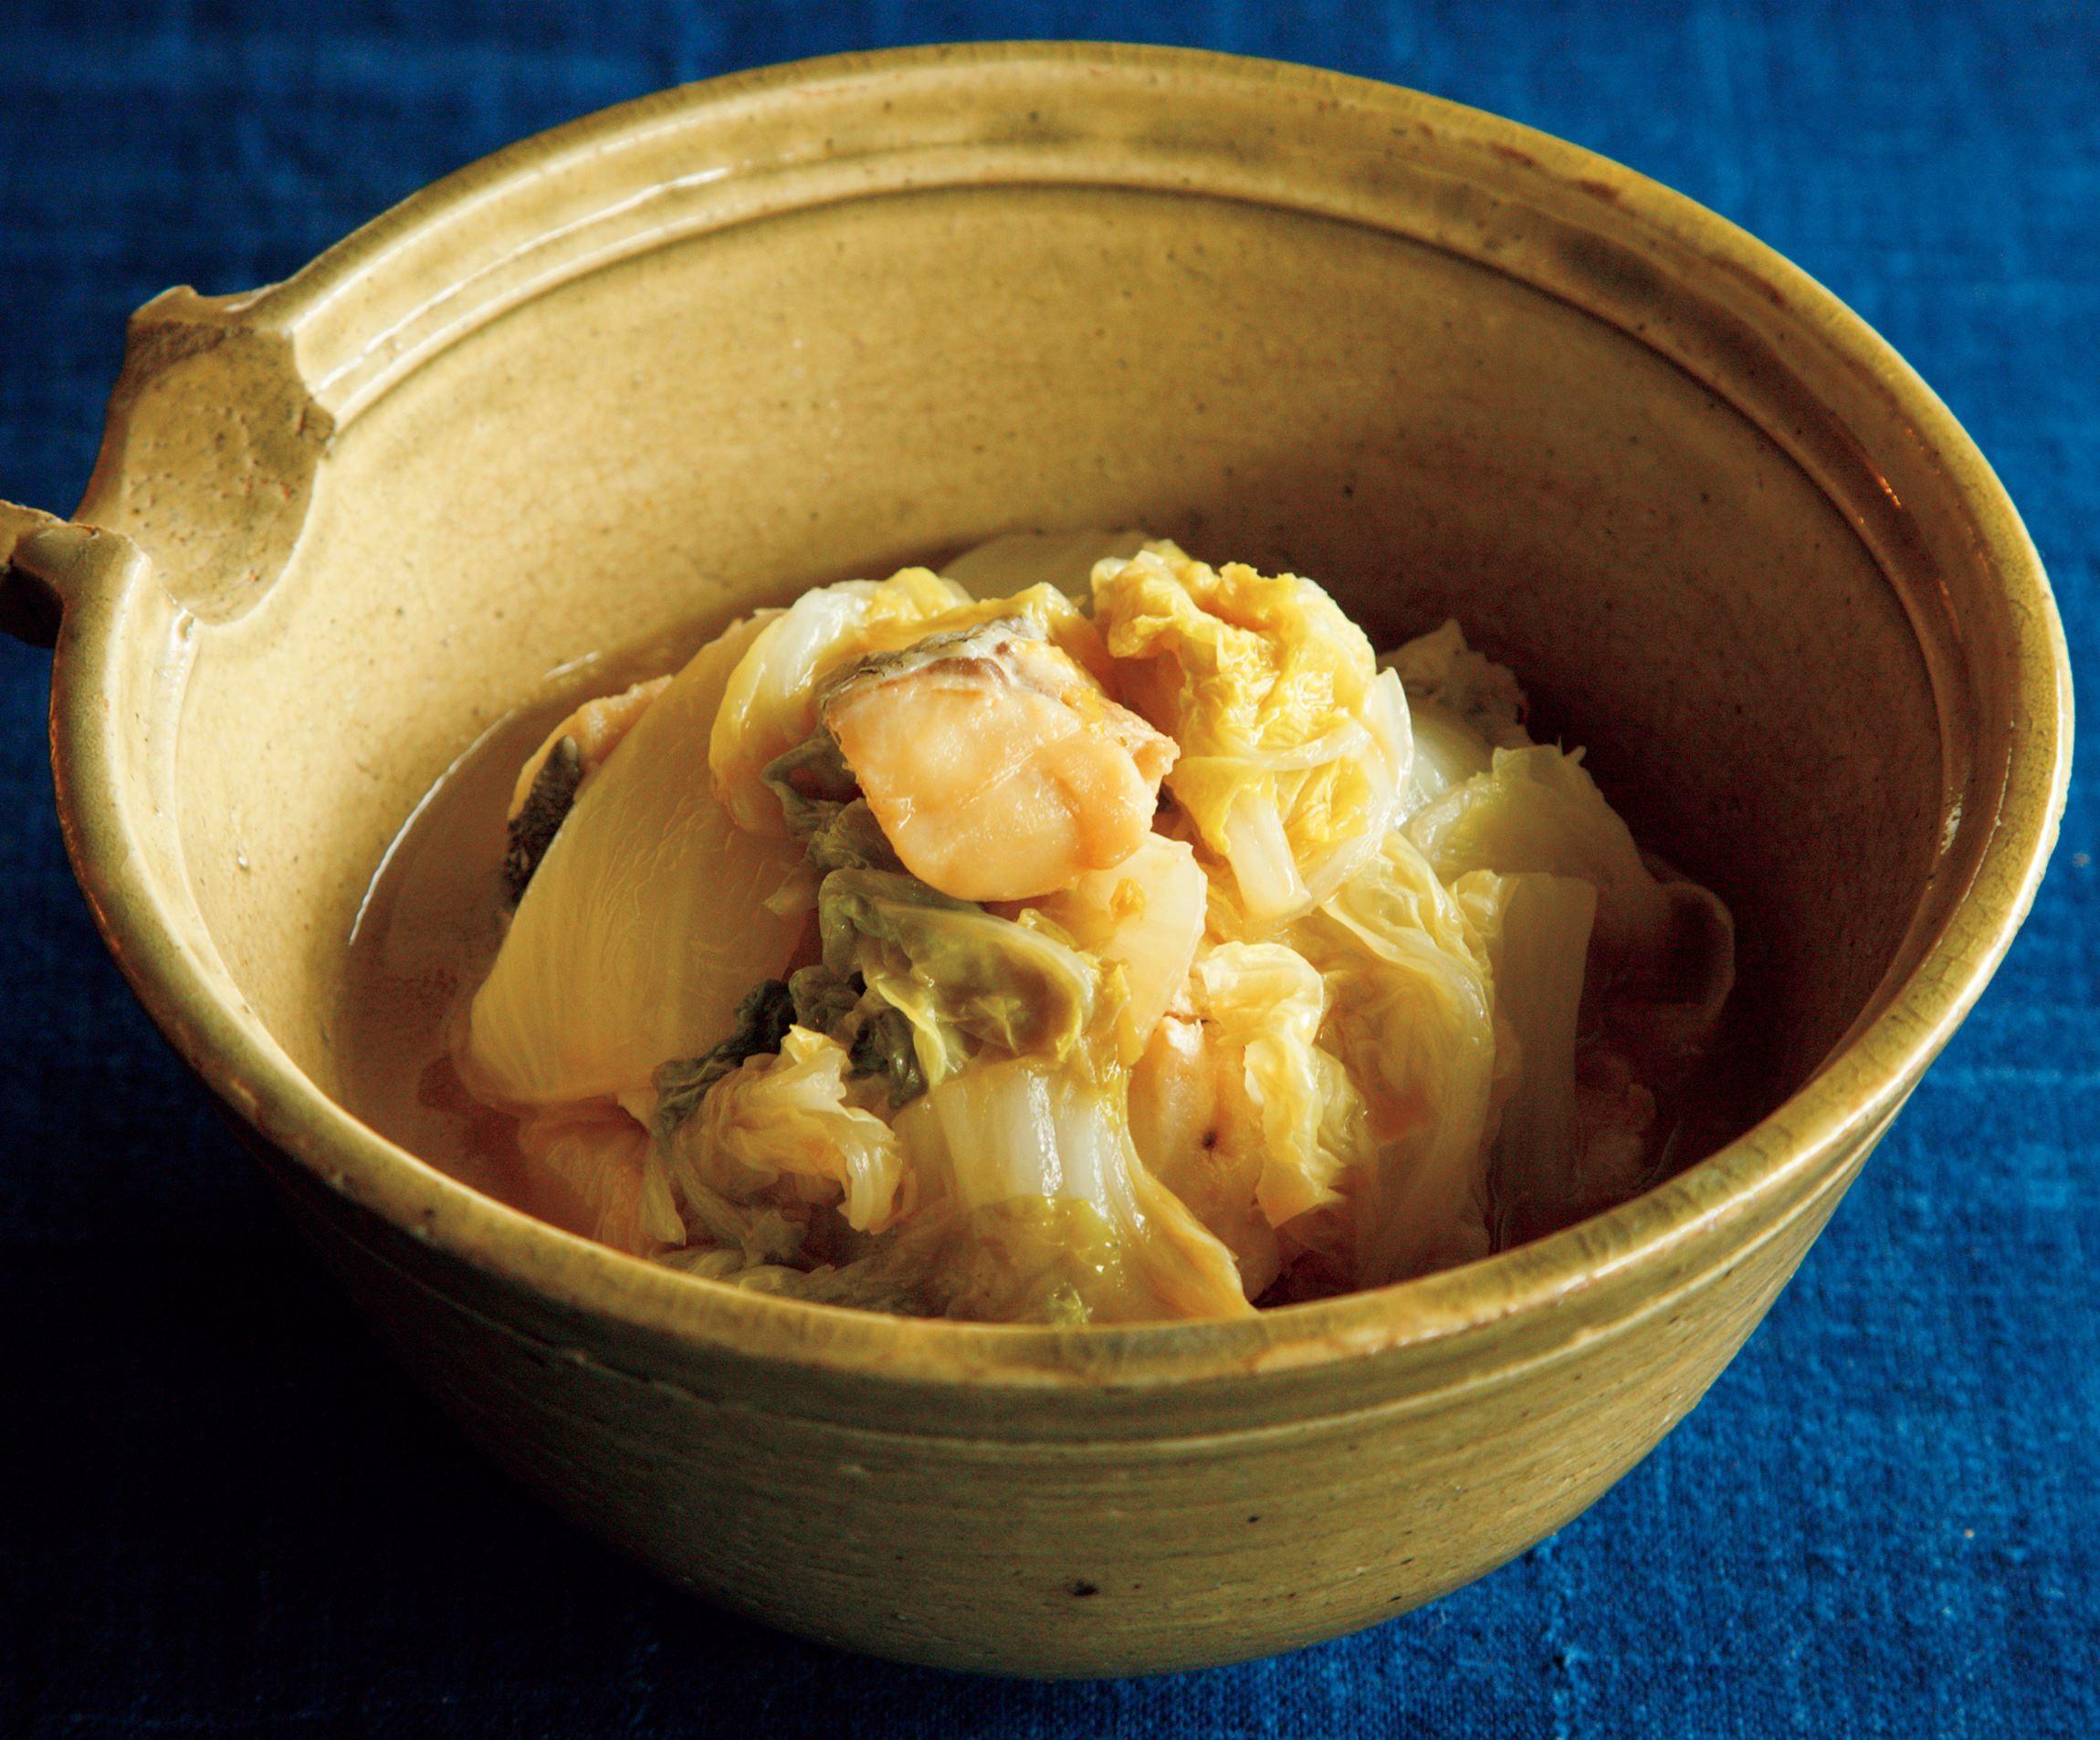 堤人美さんの たらと白菜のバター蒸し 冬にぴったりのあったかレシピ 公式 Dancyu ダンチュウ